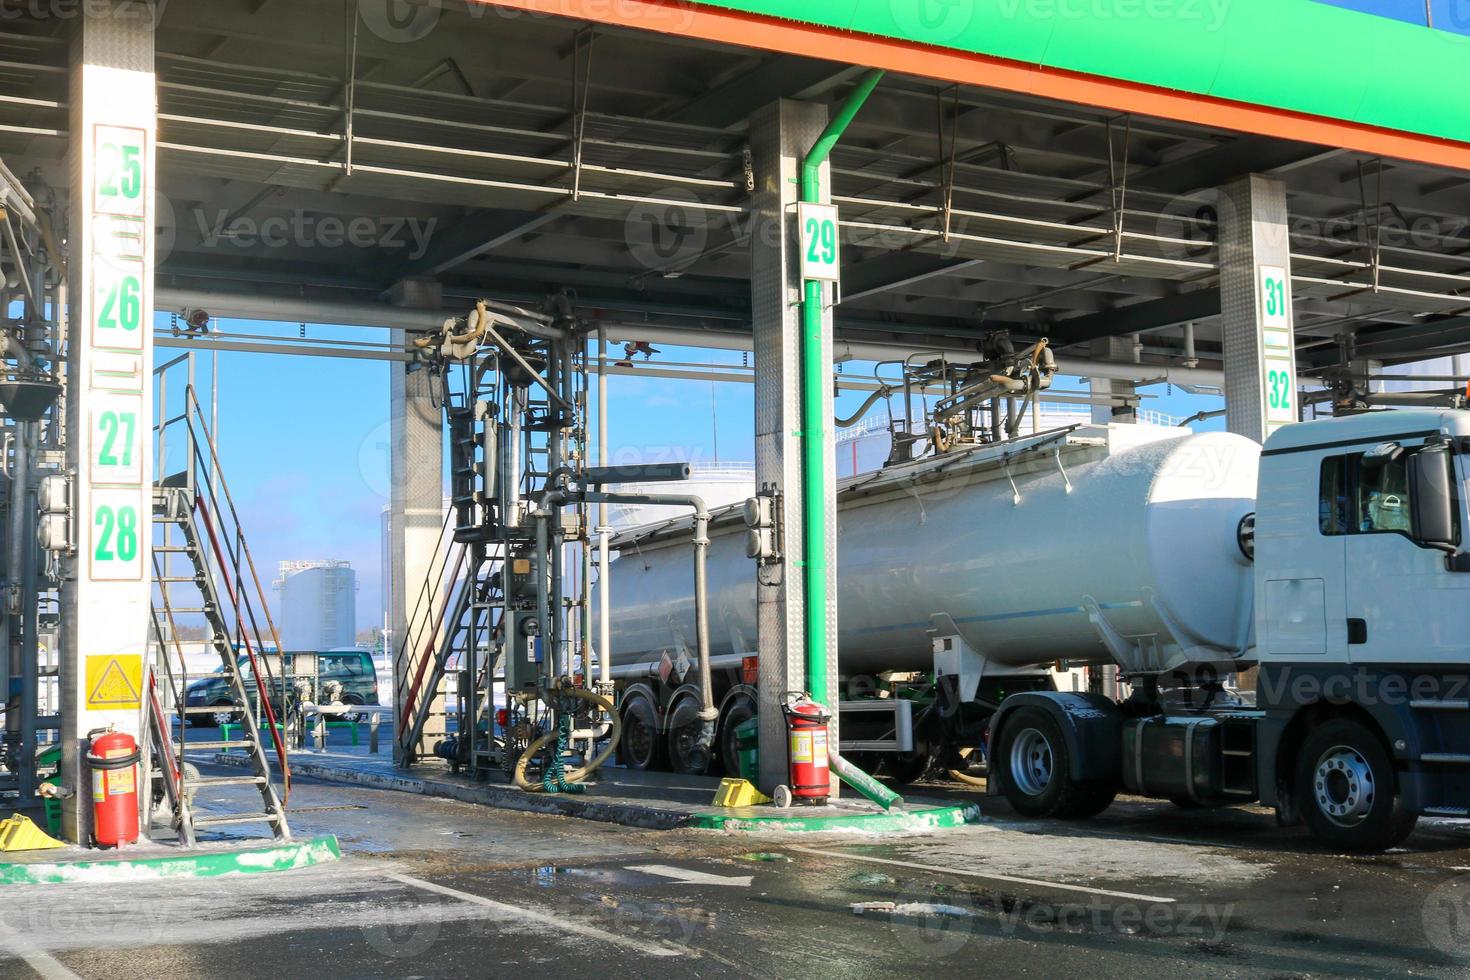 grande posto de gasolina industrial verde para reabastecer veículos, caminhões e tanques com combustível, gasolina e diesel no inverno foto